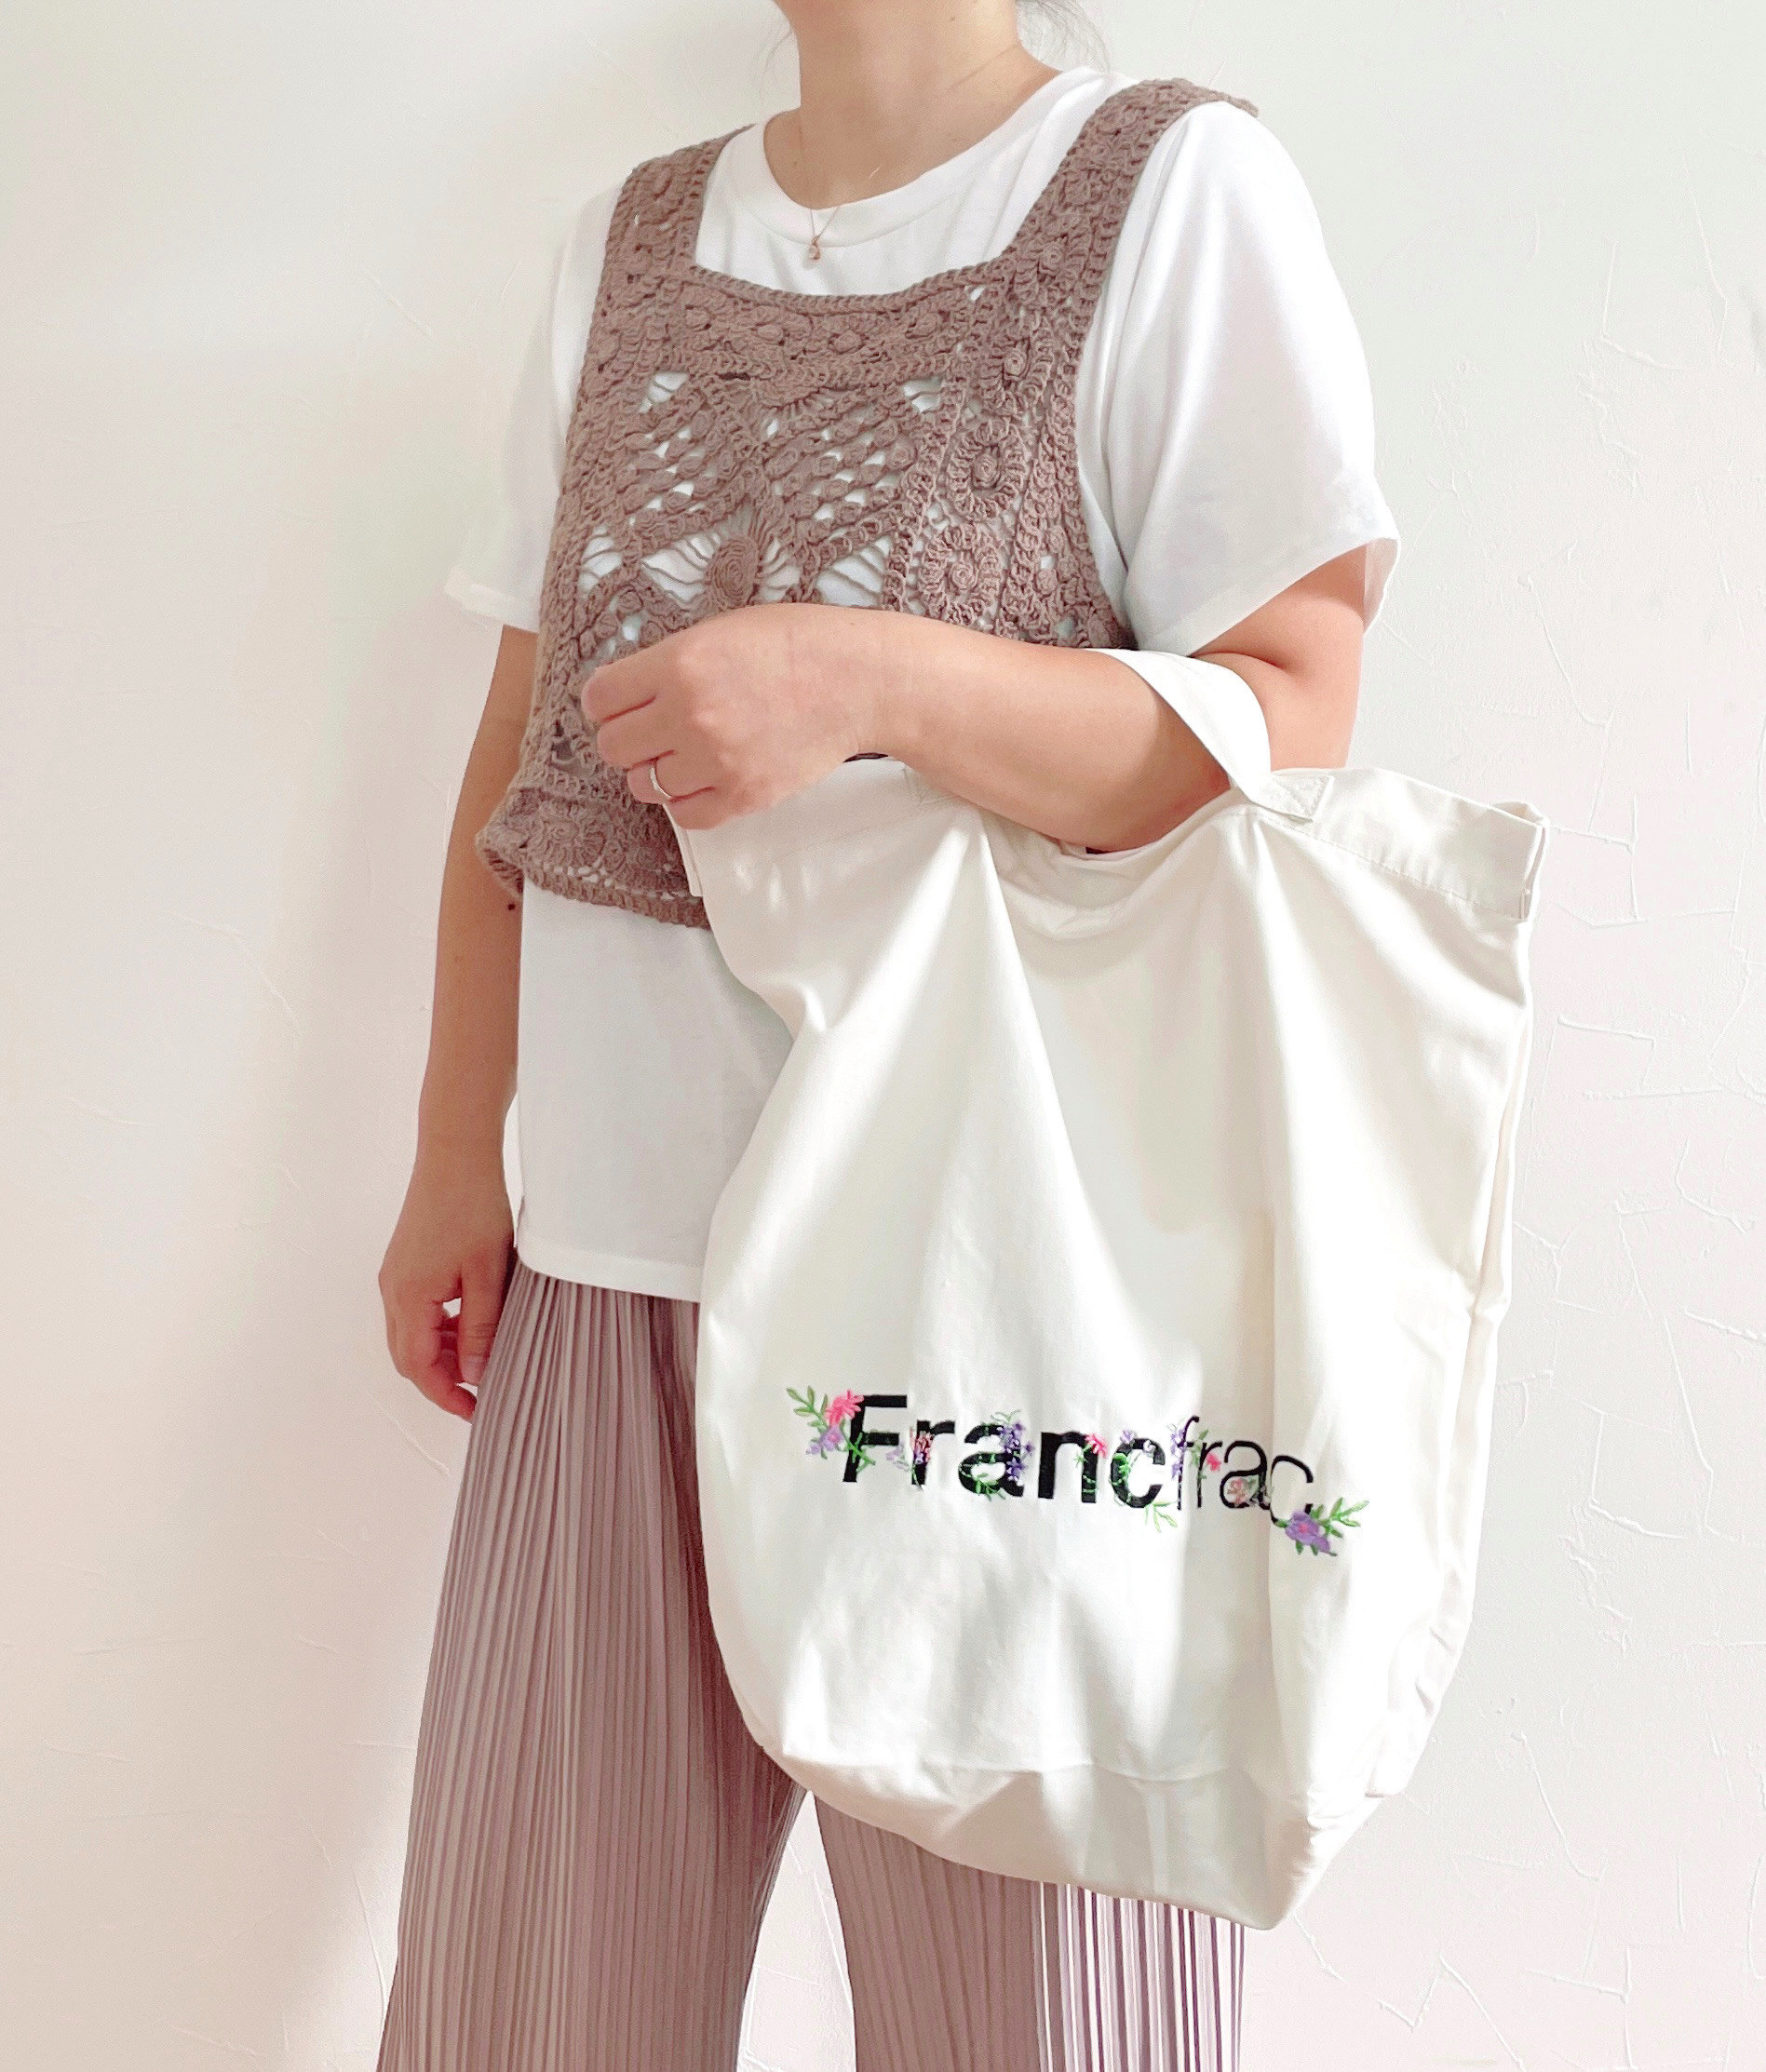 francfranc（フランフラン）のおすすめバッグ「ロゴ ショルダーバッグ フラワー刺繍」のコーディネート